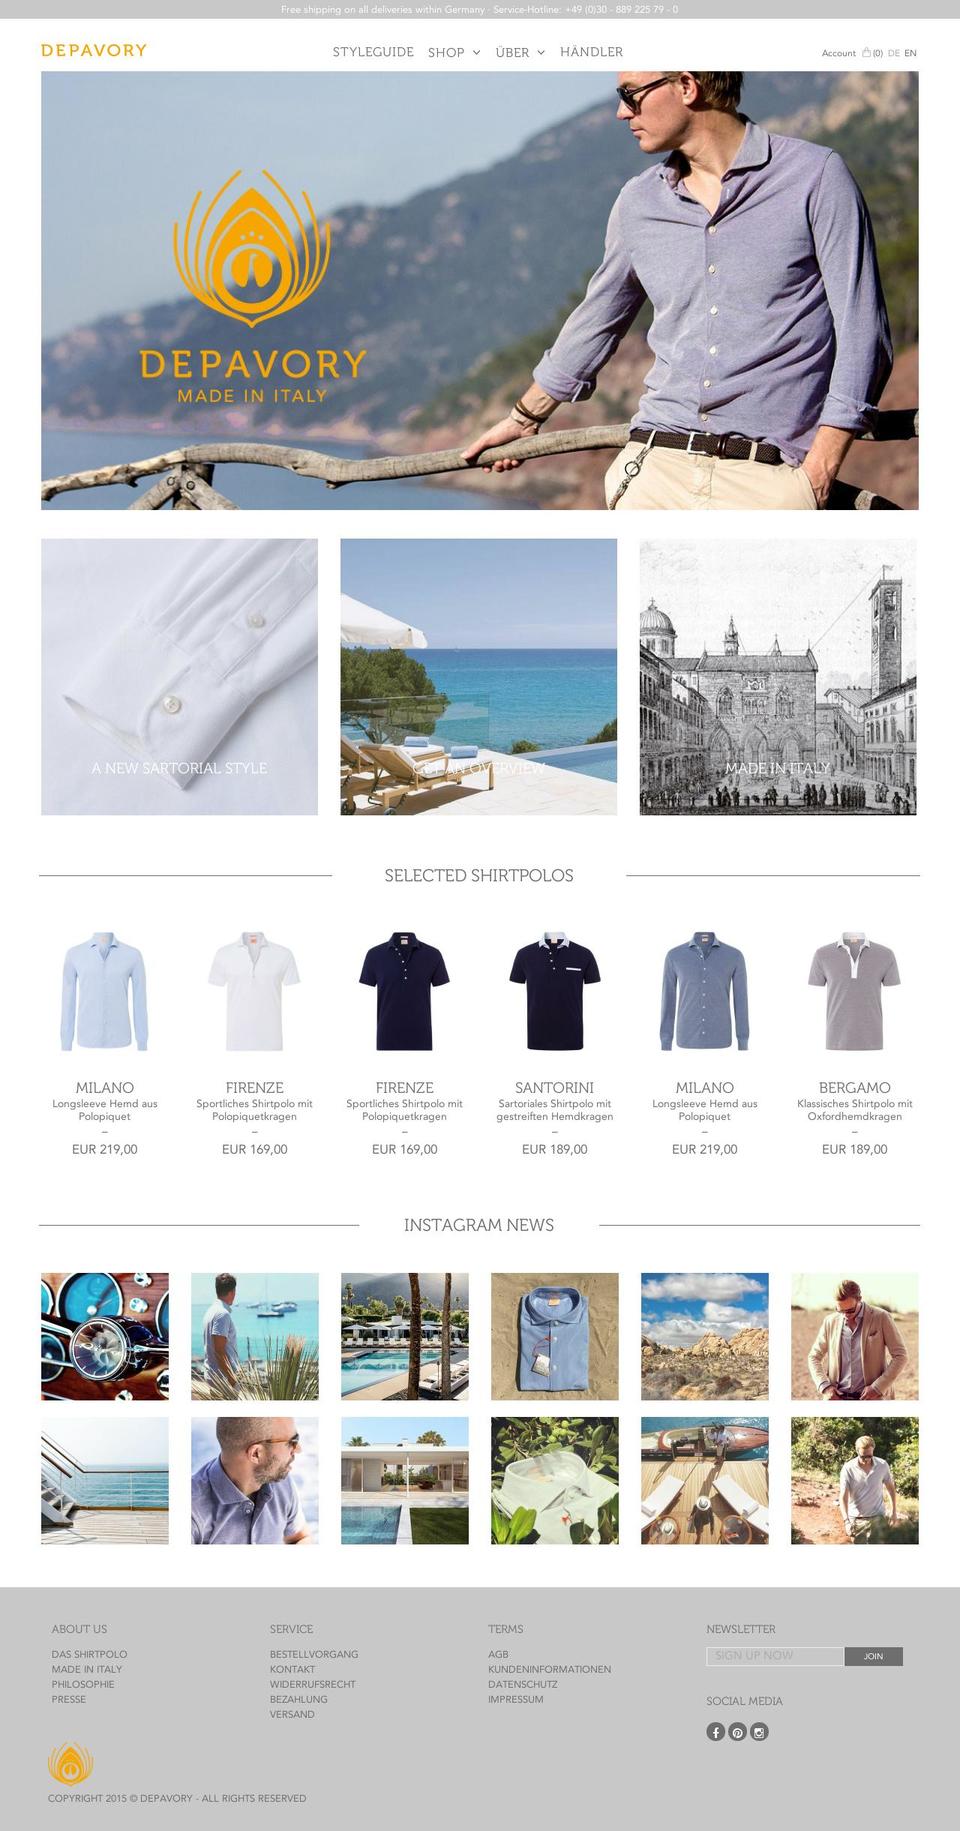 shirtpolo.de shopify website screenshot